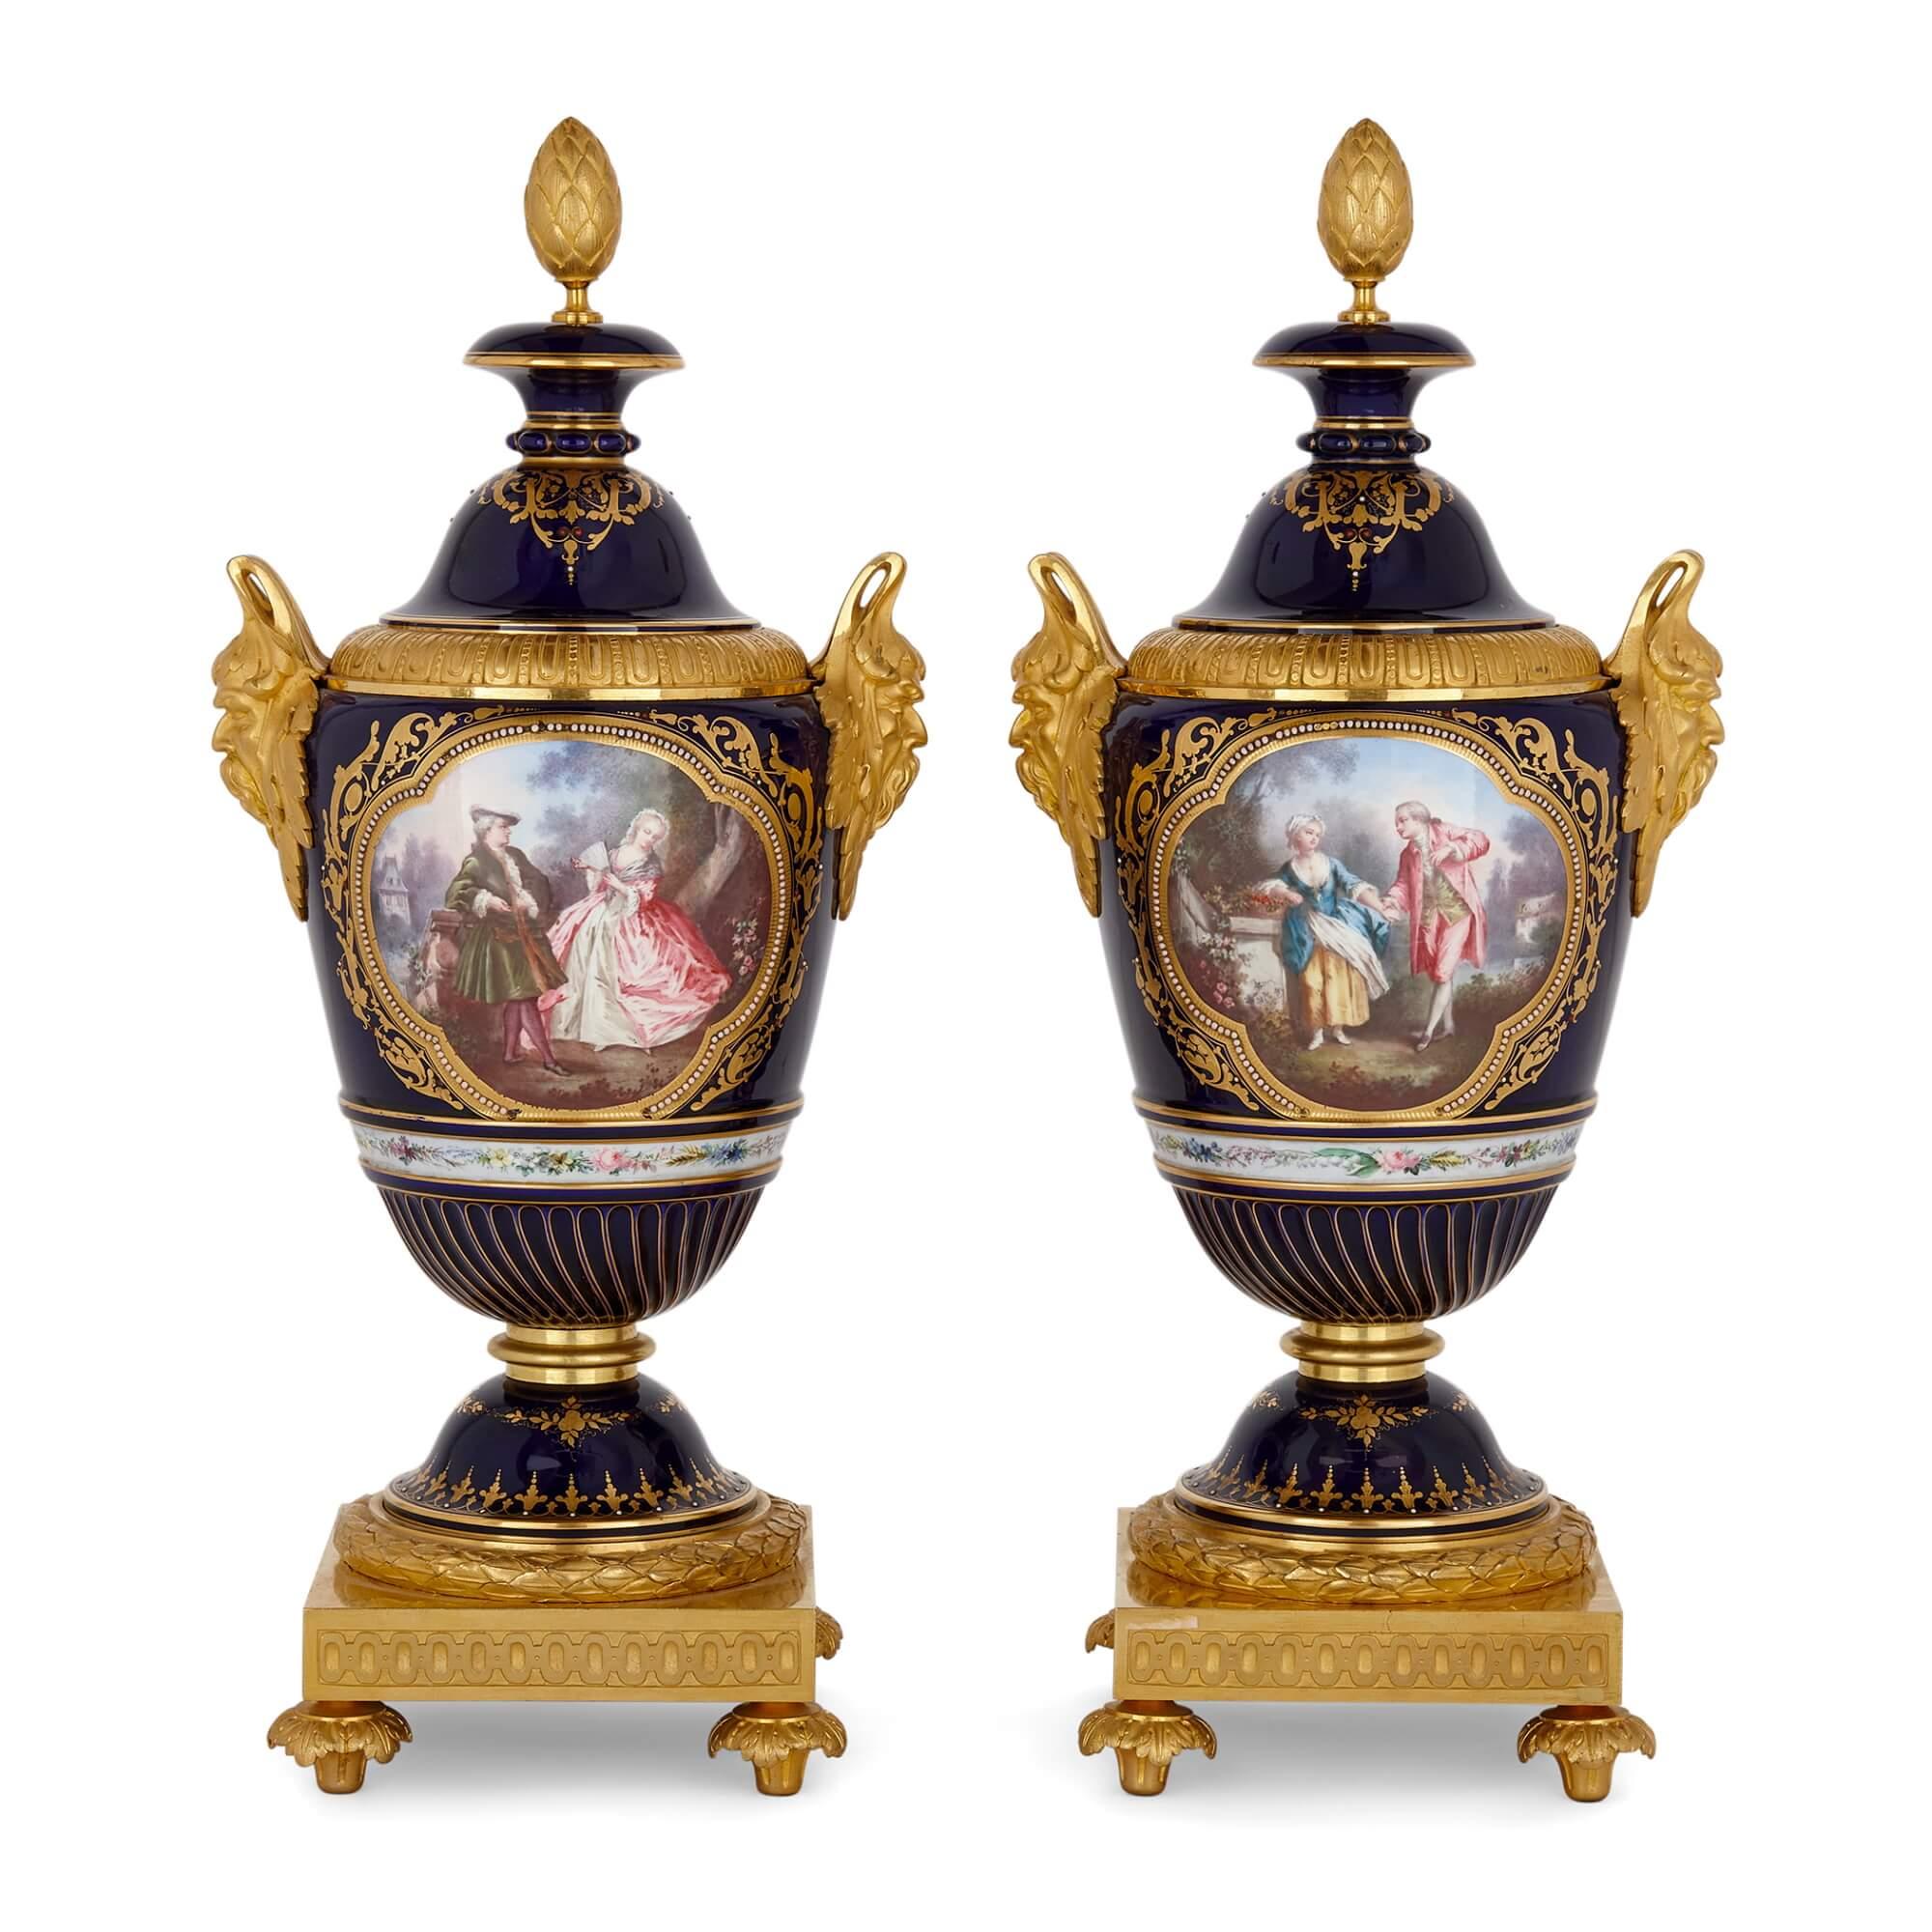 Paar Vasen aus vergoldeter Bronze und Porzellan mit Juwelen im Sèvres-Stil 
Französisch, Ende 19. Jahrhundert 
Höhe 46cm, Breite 21cm, Tiefe 16cm

Dieses charmante Vasenpaar im Stil der berühmten Porzellanmanufaktur Sèvres zeigt sowohl figurale als